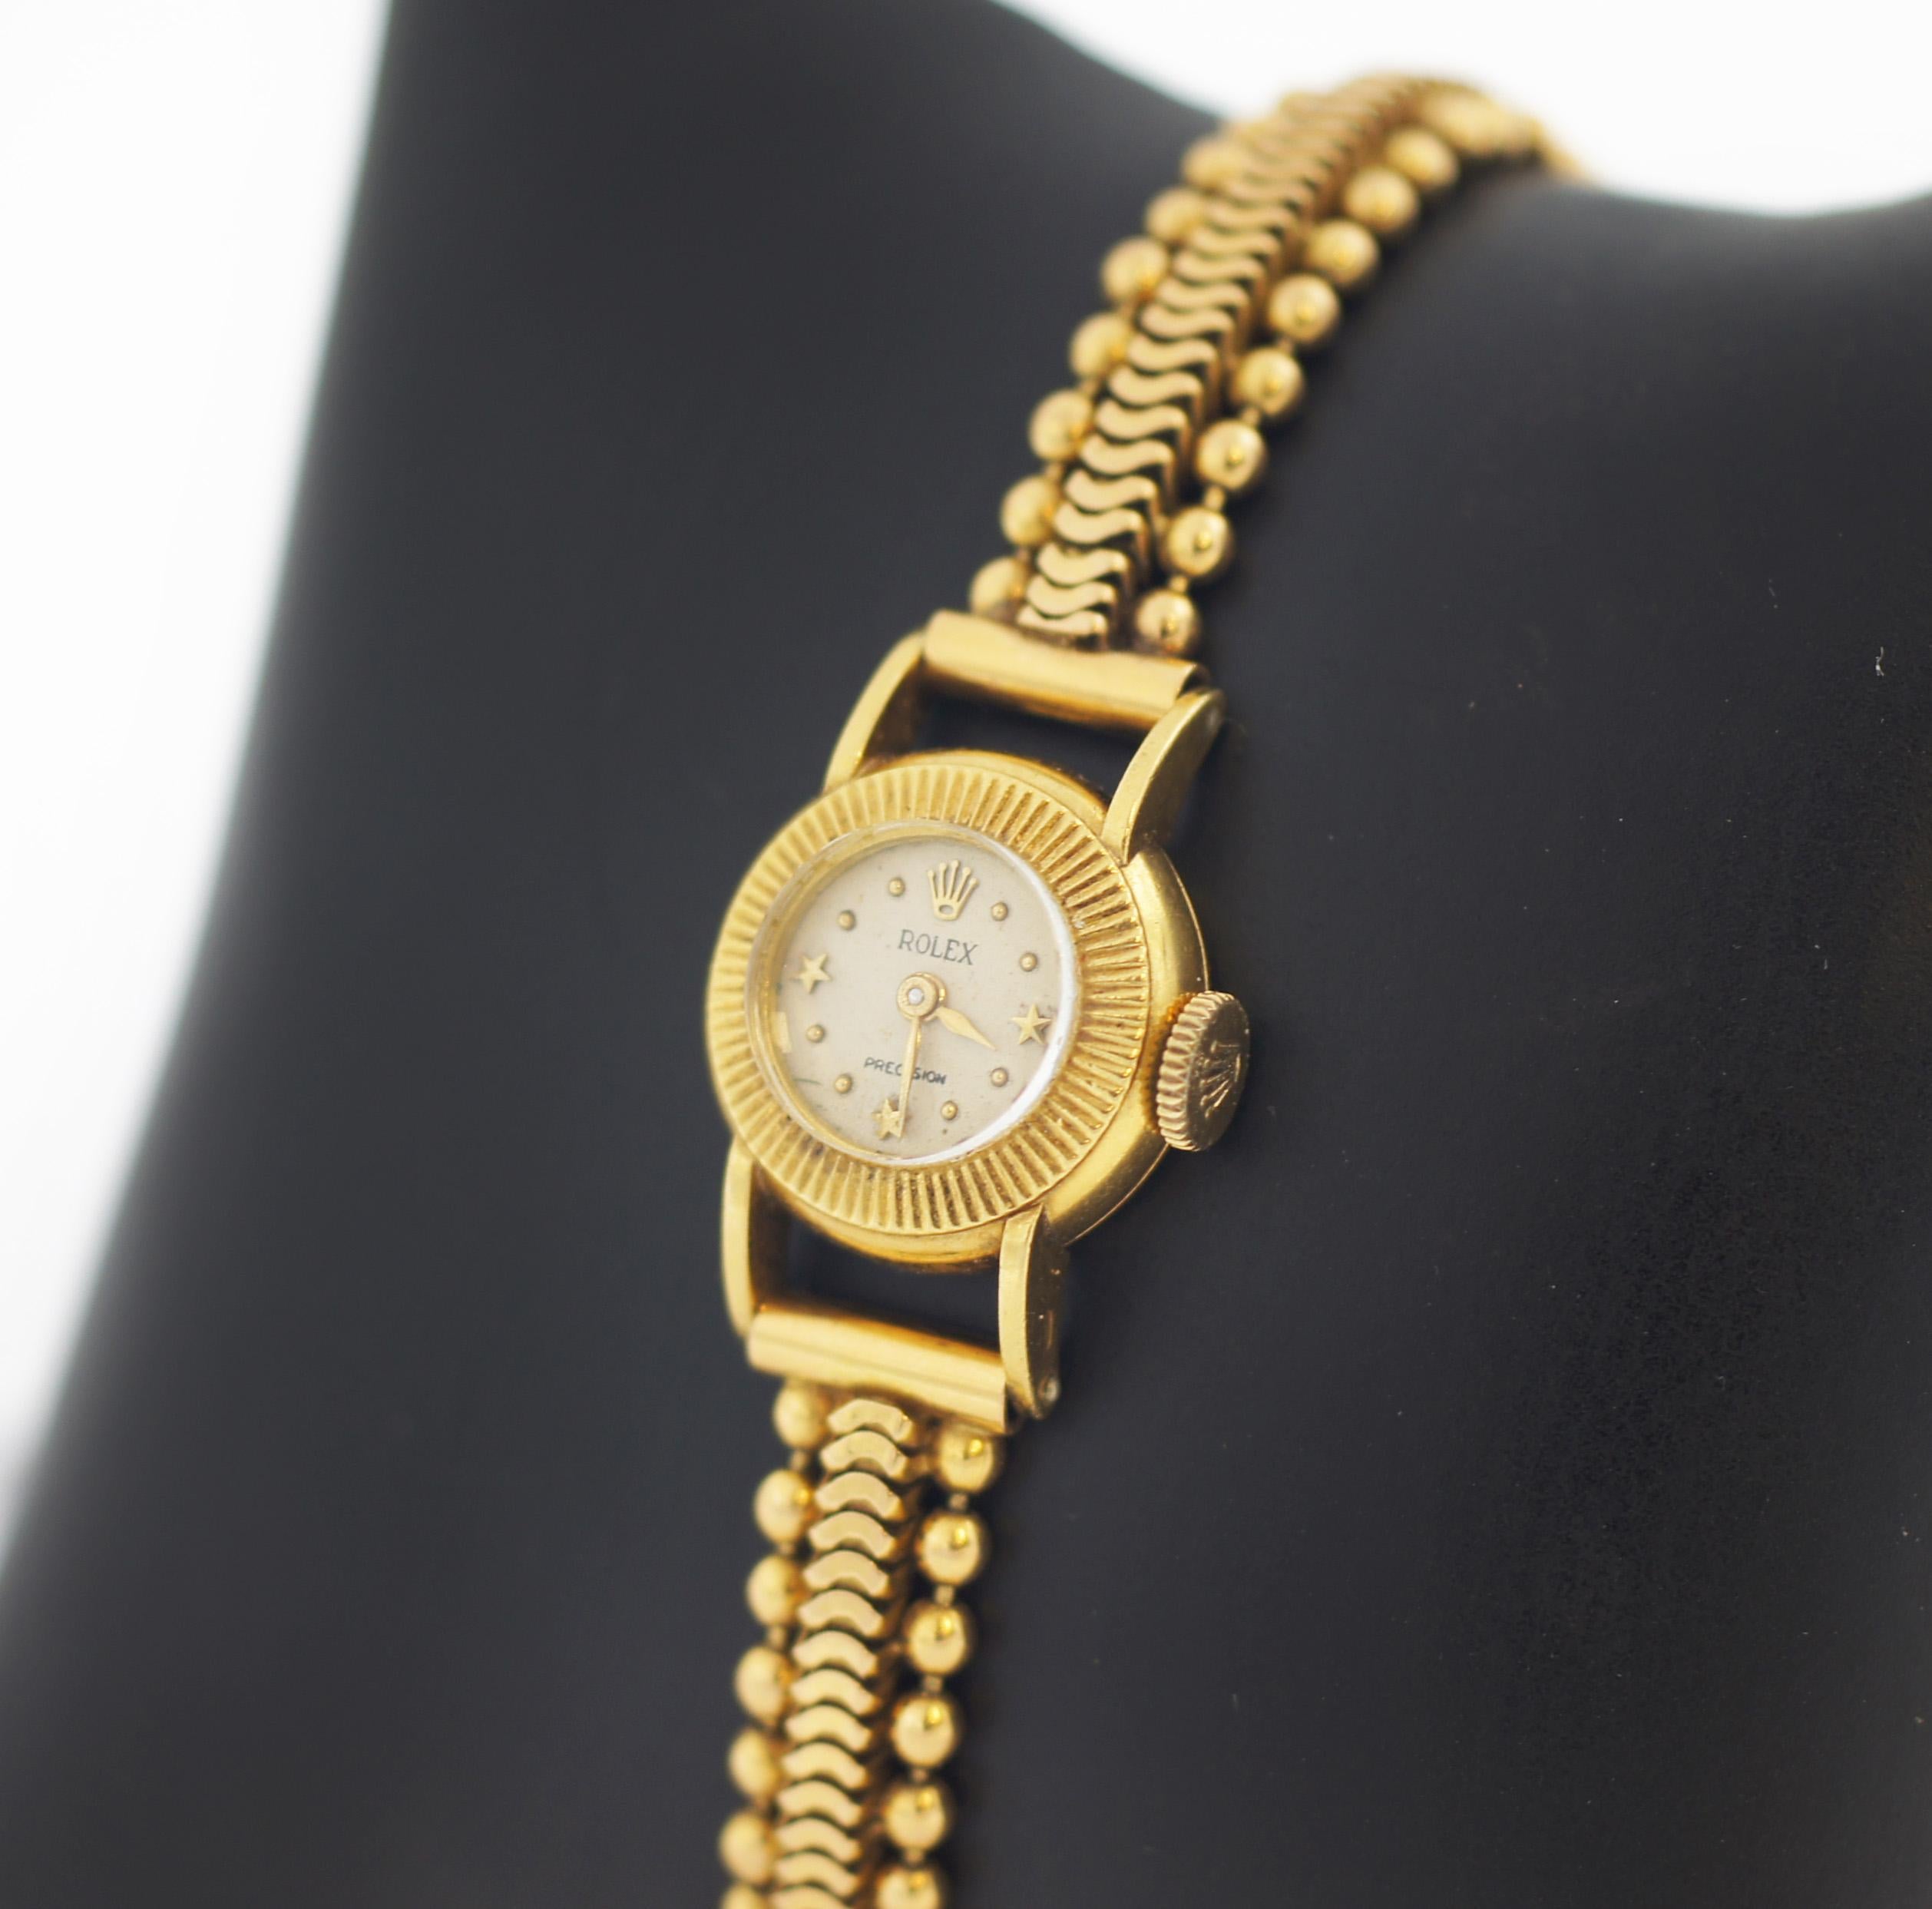 Rolex 18K Gold Vintage Precision Mechanische Uhr mit mechanischem Uhrwerk 4